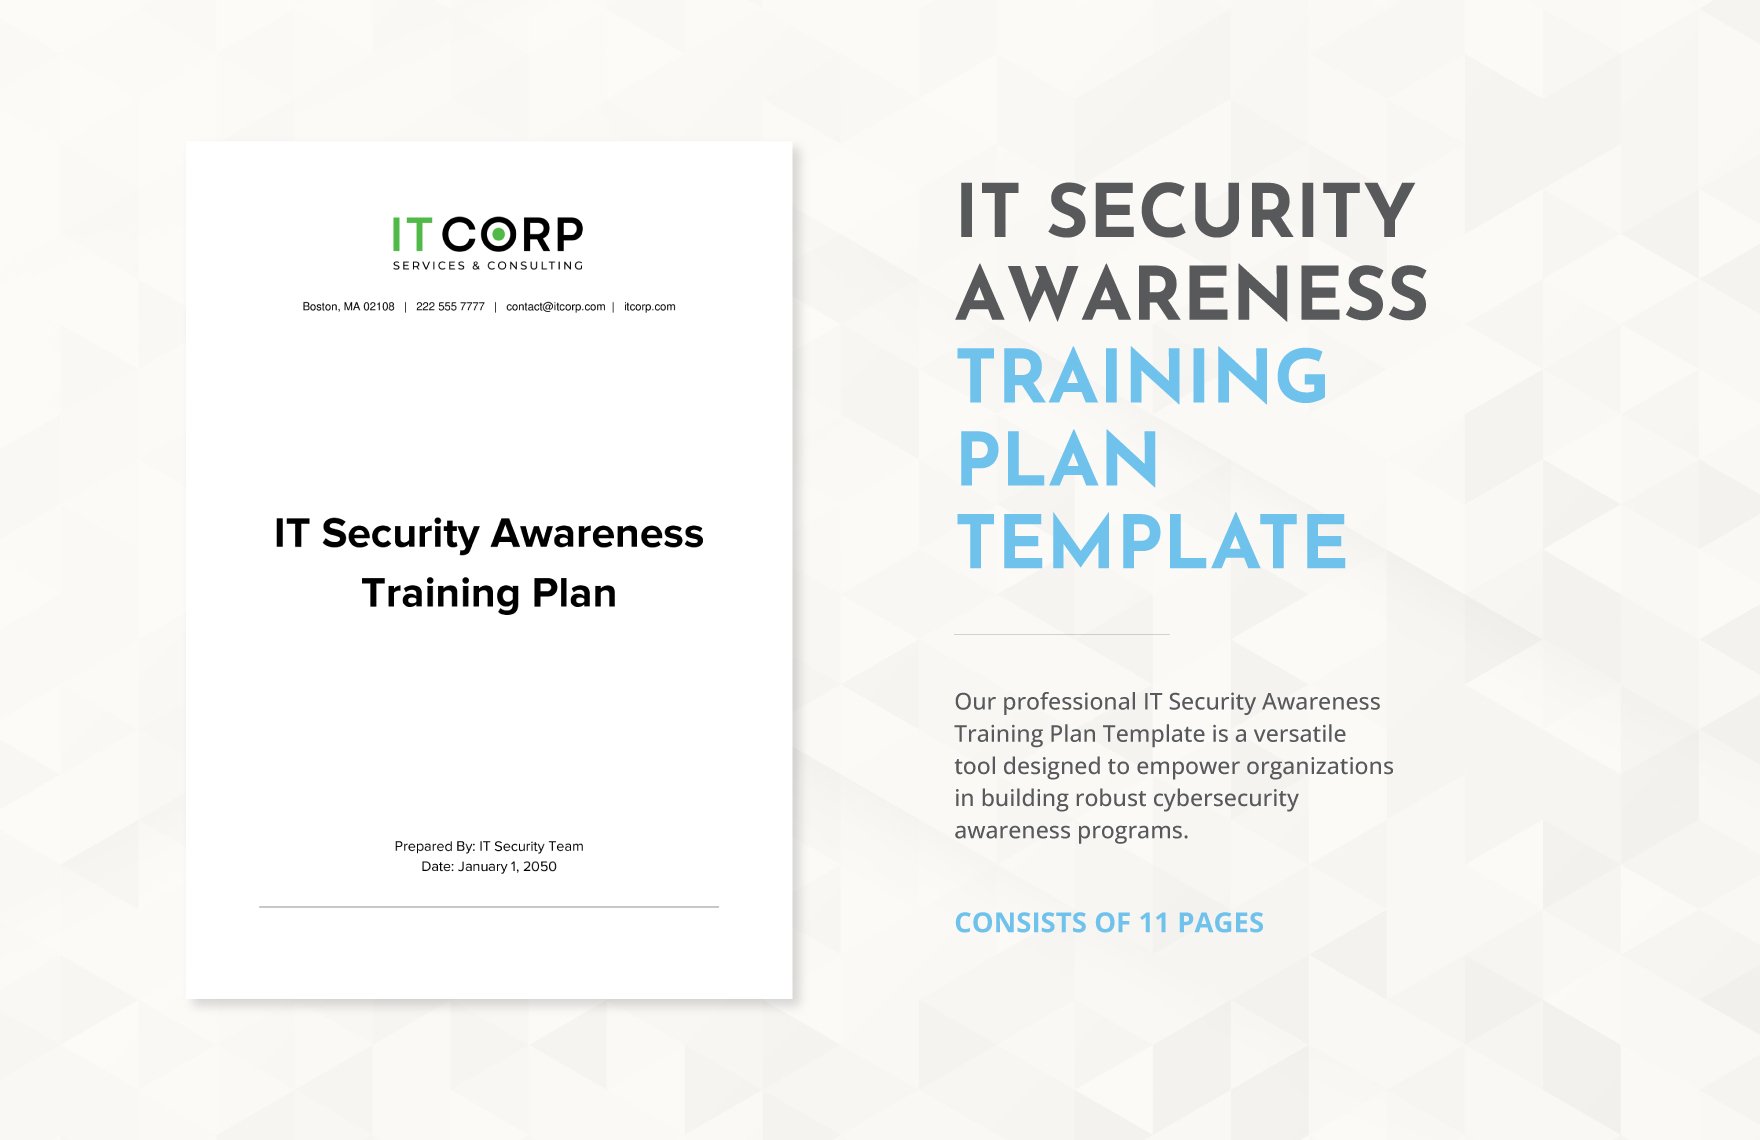 IT Security Awareness Training Plan Template